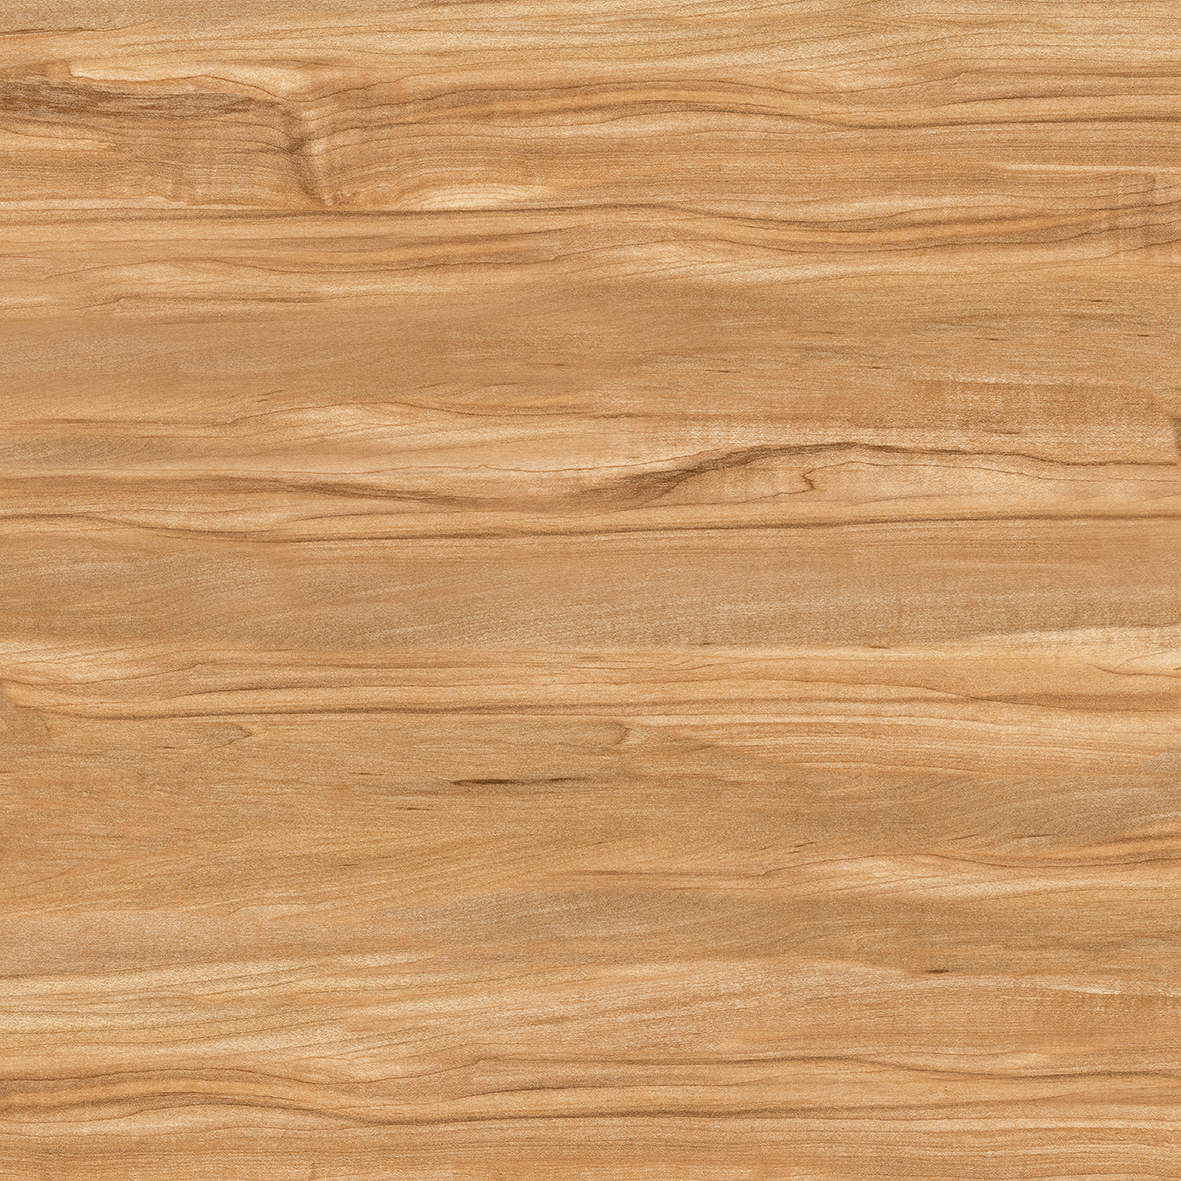 Gạch lát nền giả gỗ Ý Mỹ 60x60 P68086